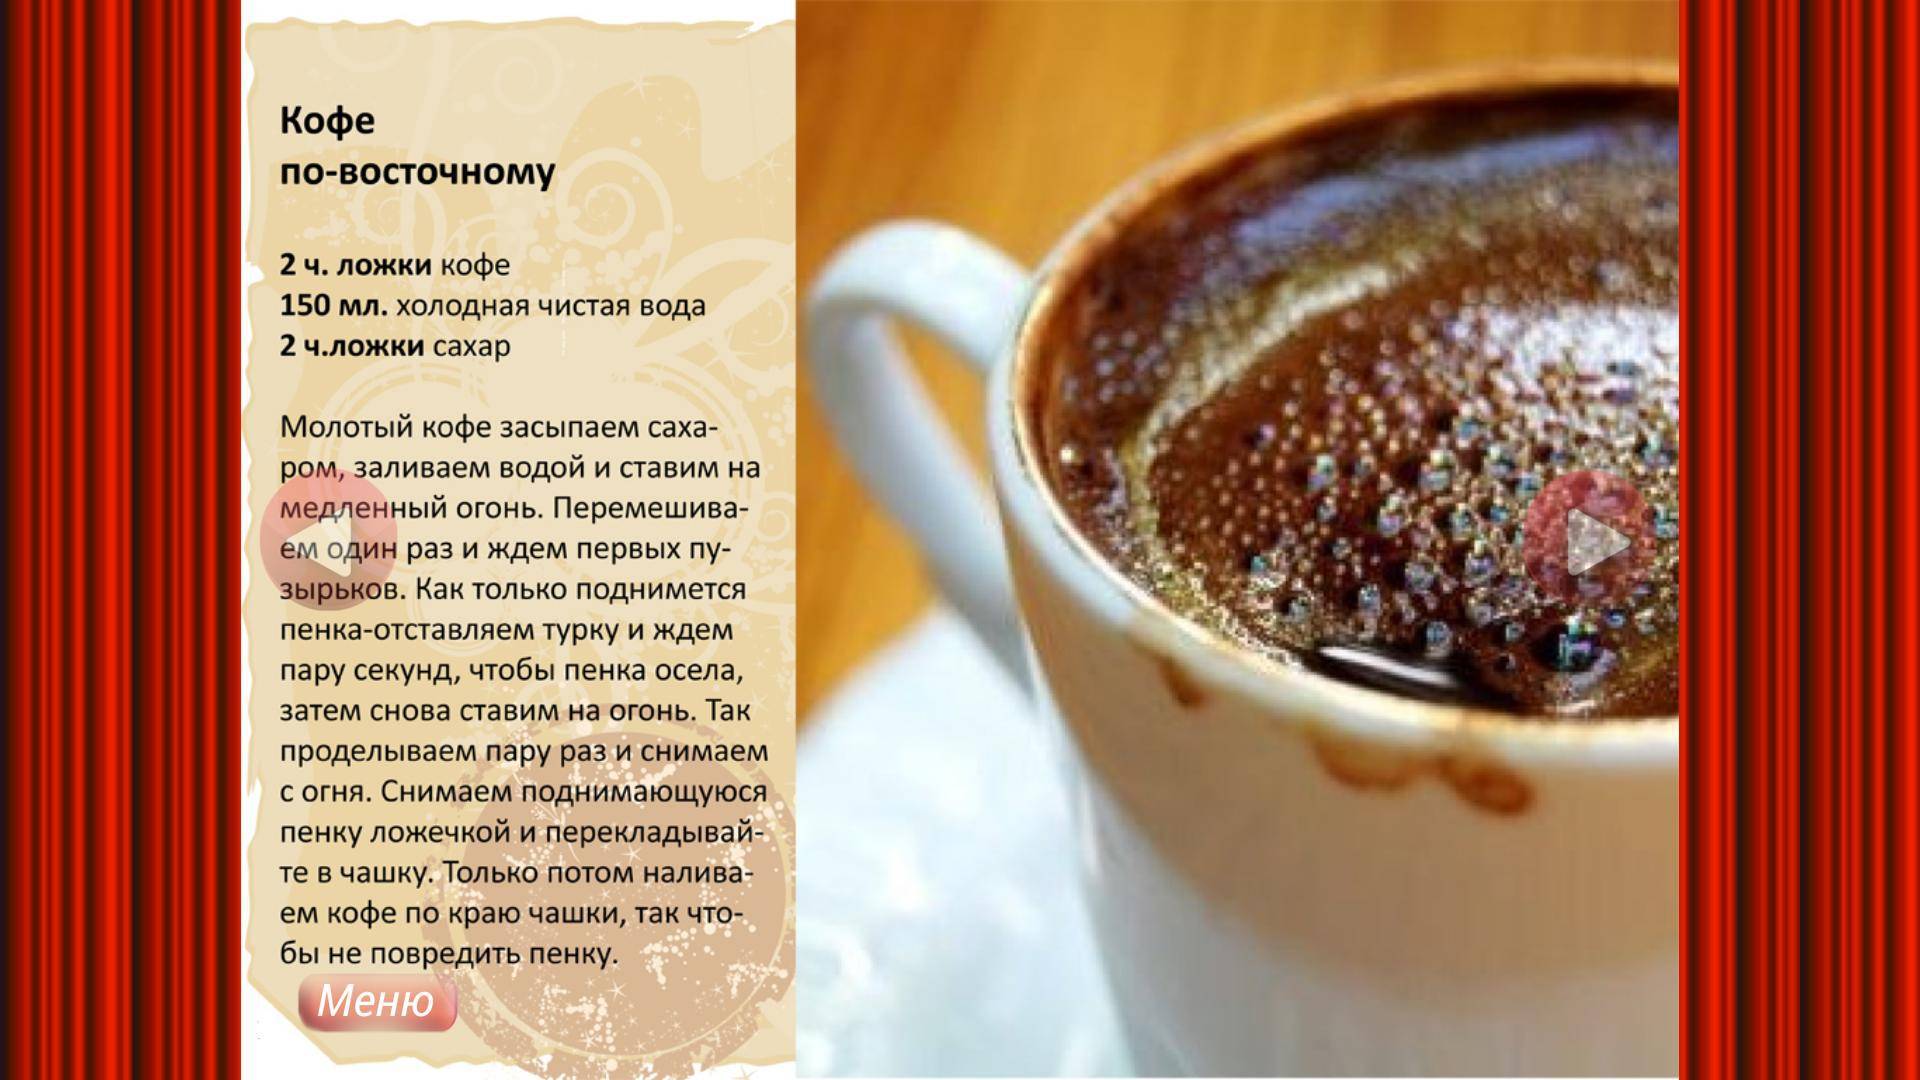 Как приготовить кофе с медом, чтобы он сохранил полезные свойства: топ 9 лучших рецептов кофе с медом